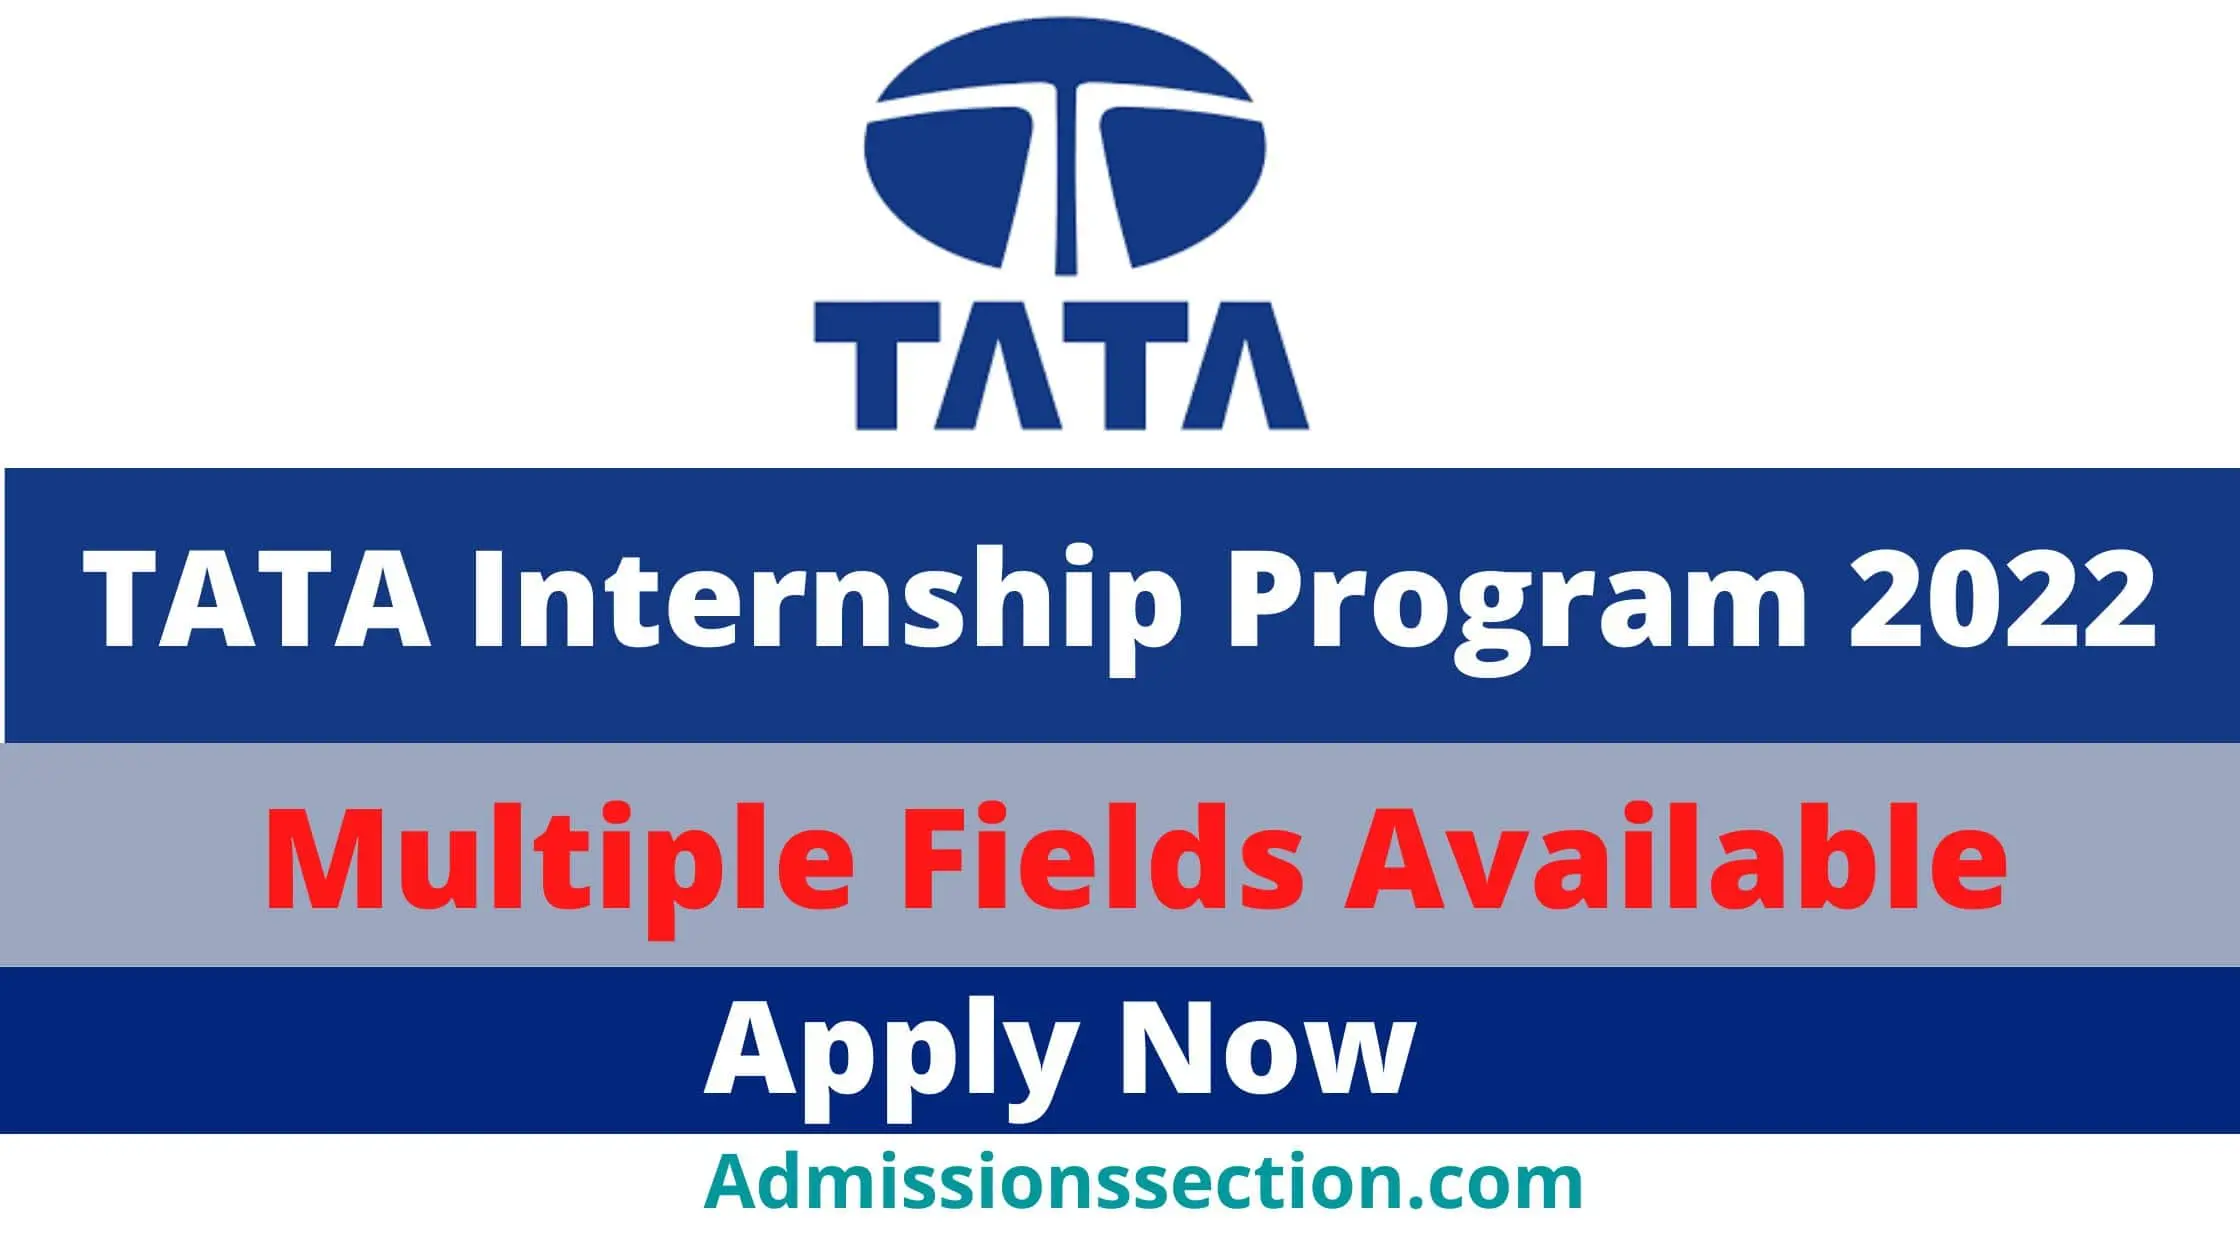 TATA Internship Program 2022